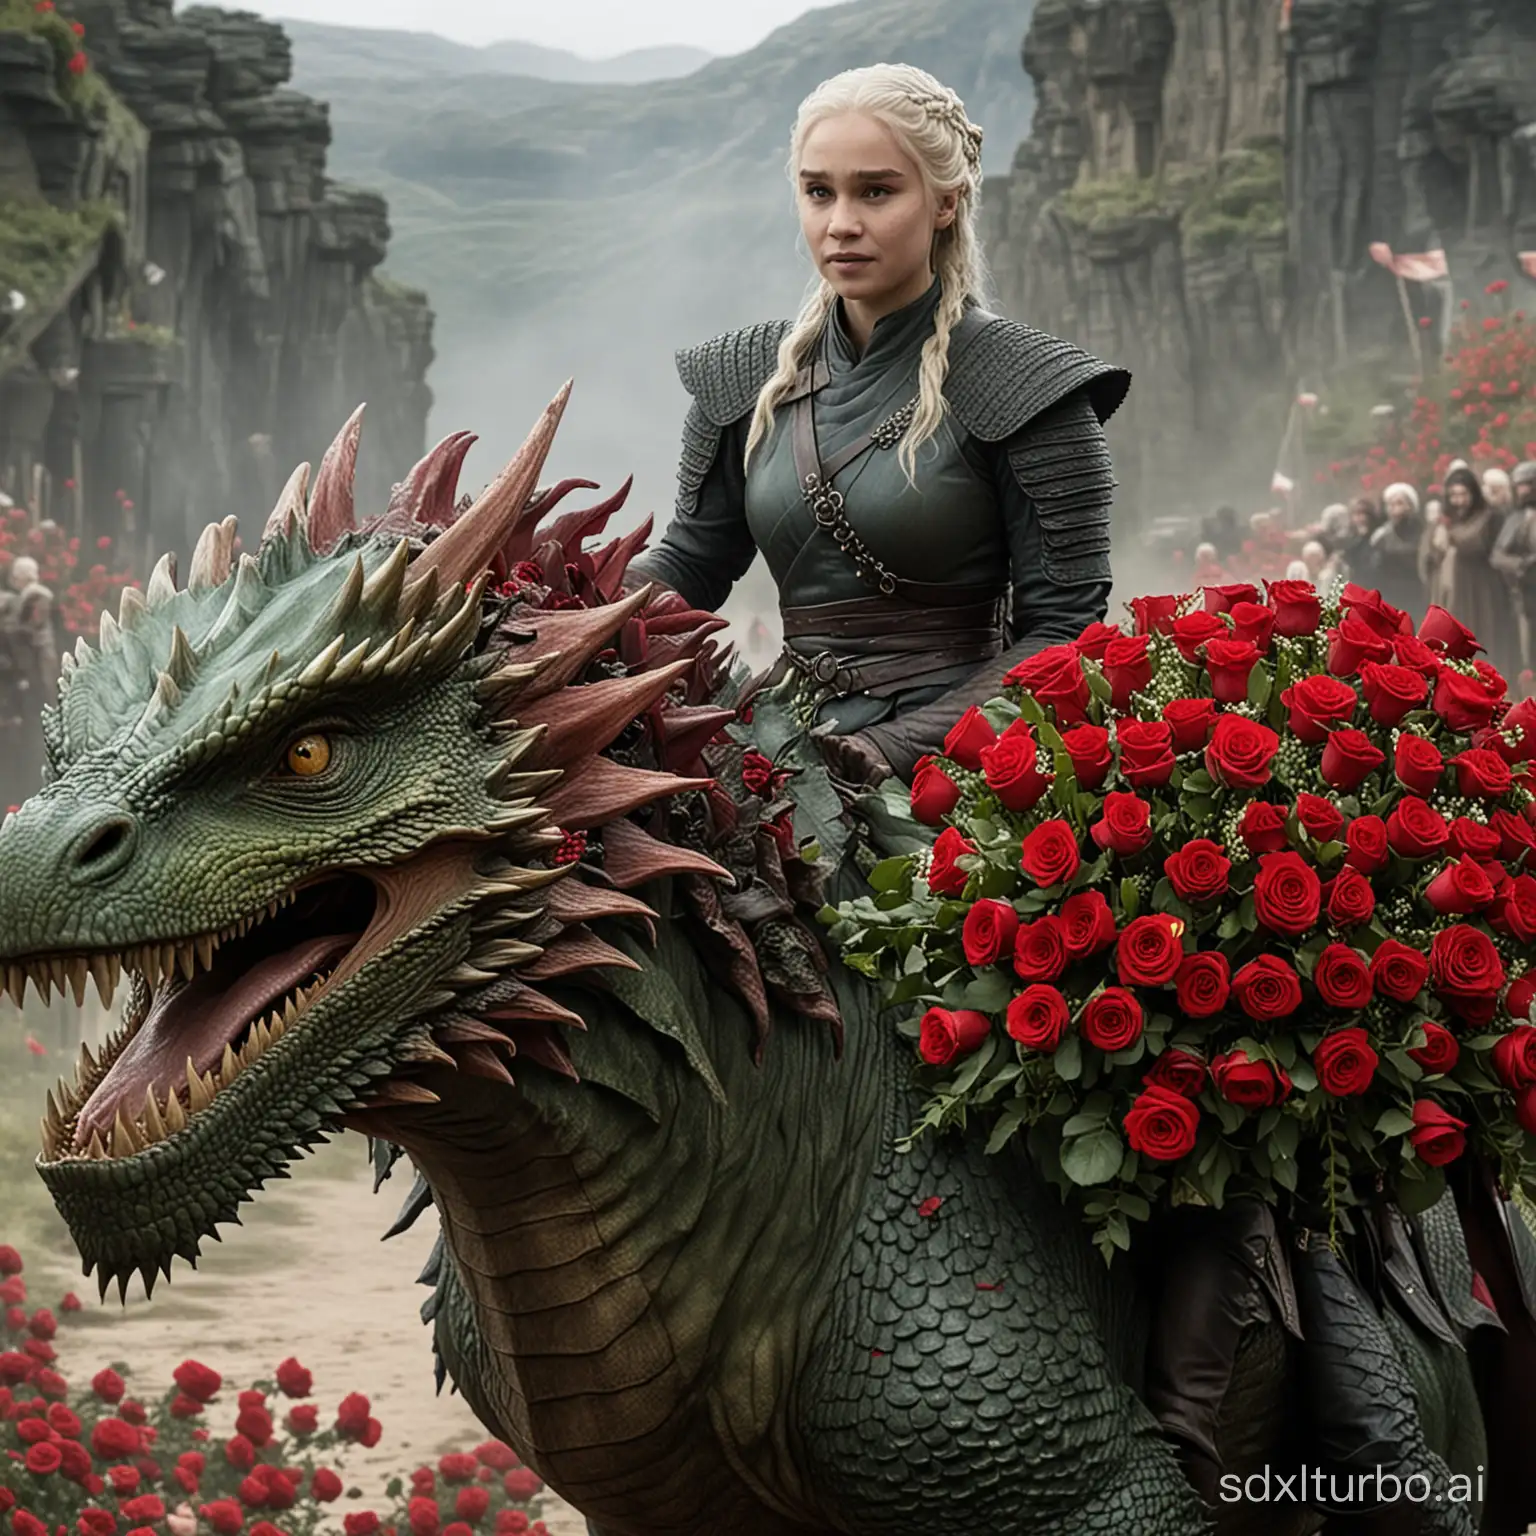 kalessi de juego de tronos subida a su dragon verde con un gran ramo de rosas rojas en las manos